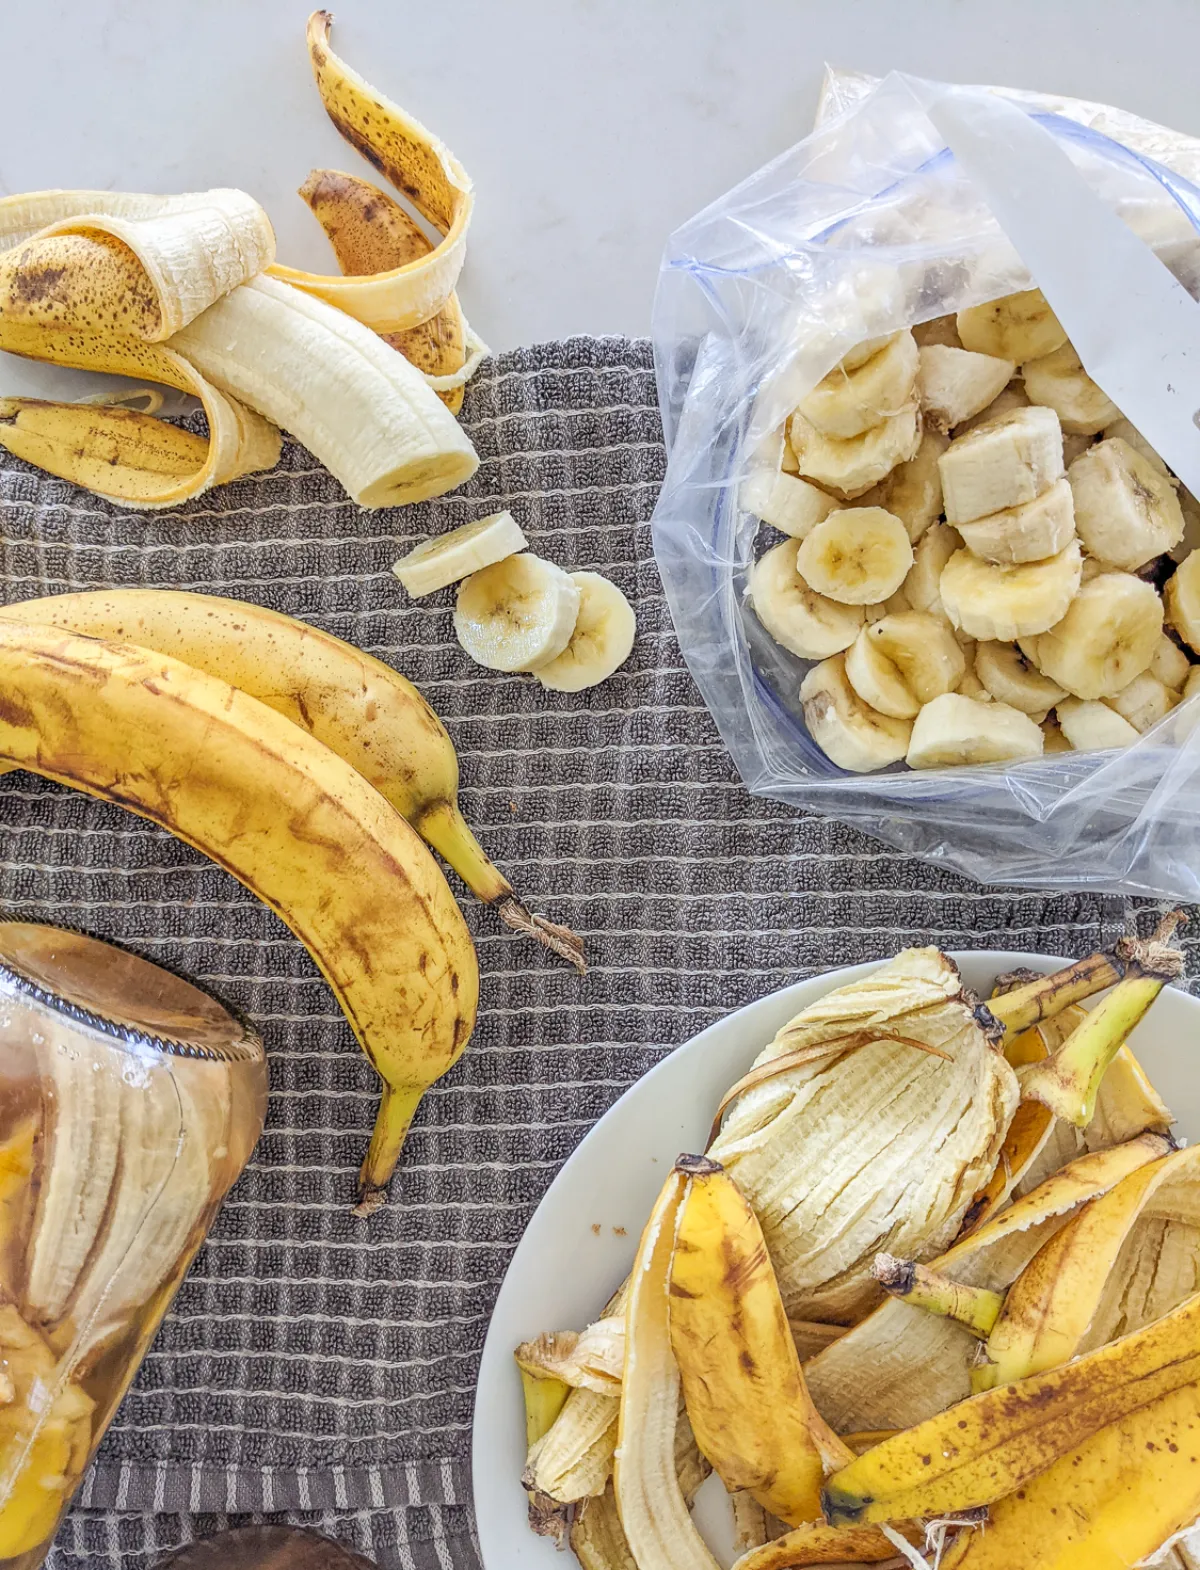 bananenschalen als düngemittel verwenden trockendünger selbst herstellen